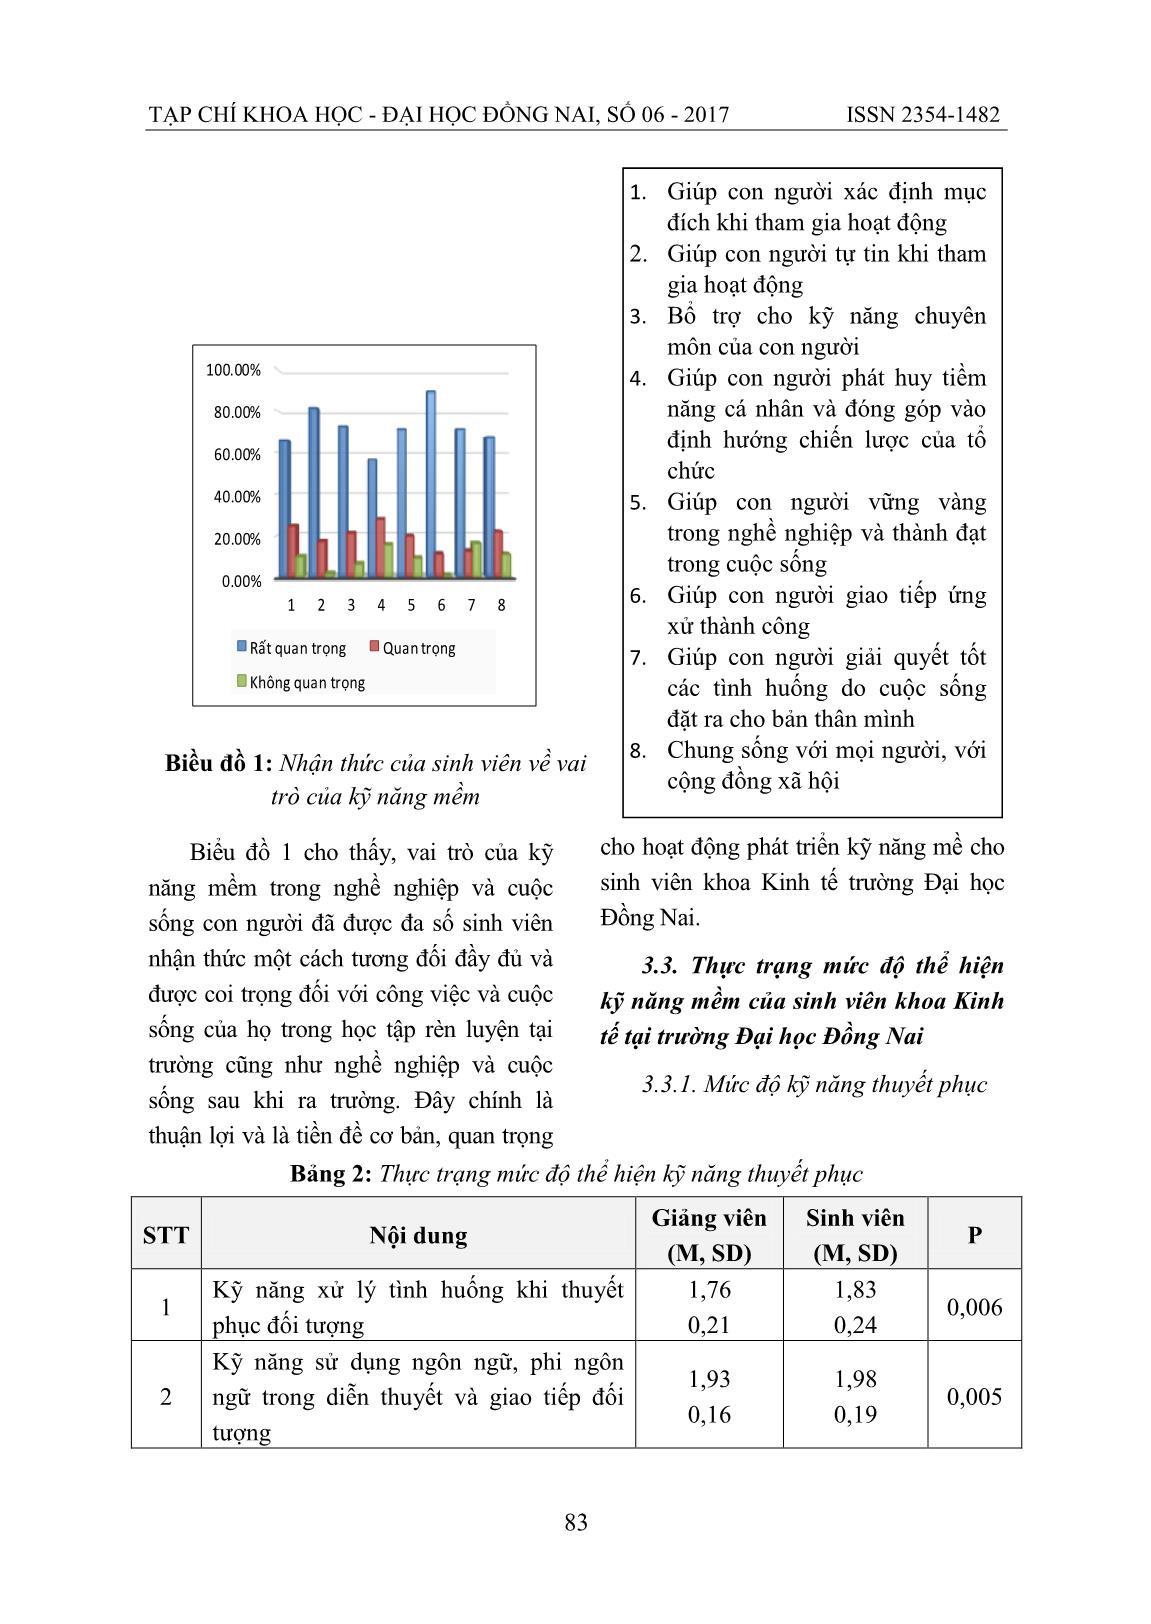 Phát triển kỹ năng mềm cho sinh viên khoa kinh tế trường đại học Đồng Nai theo tiếp cận chuẩn đầu ra trang 4